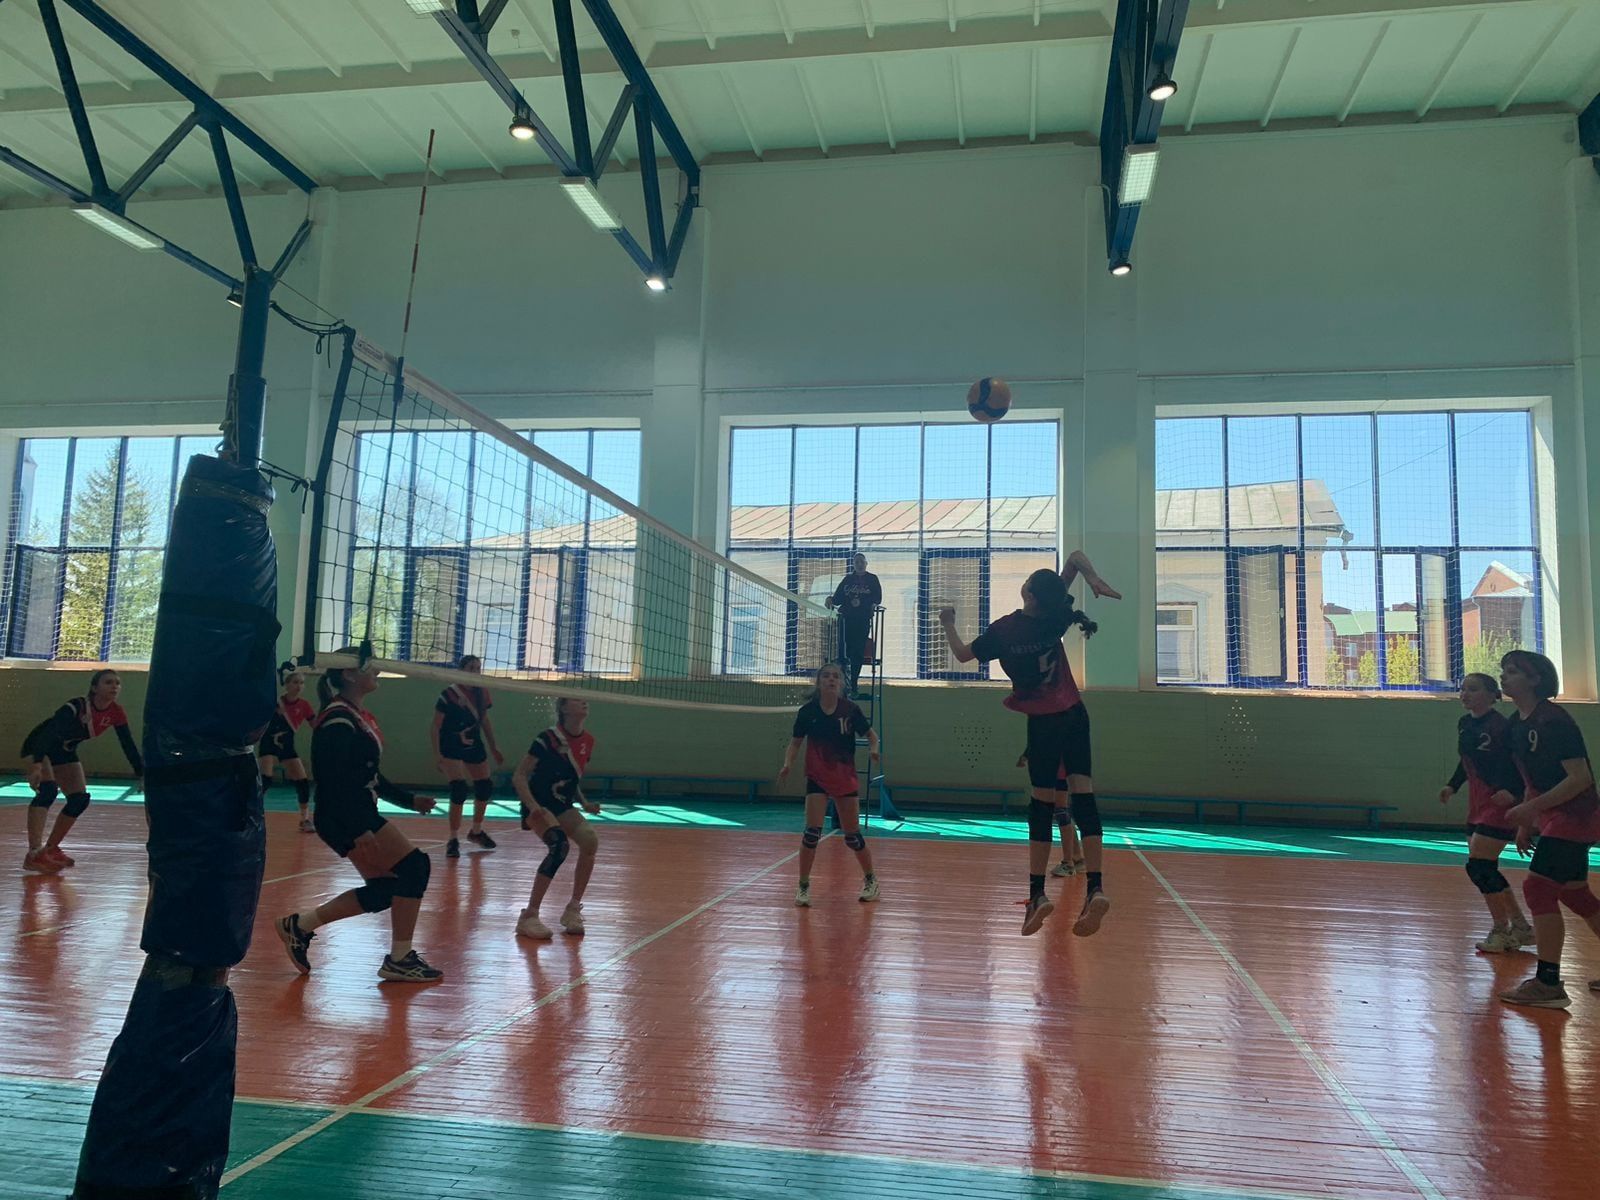 На Межрегиональном турнире по волейболу мензелинская команда заняла 2 место